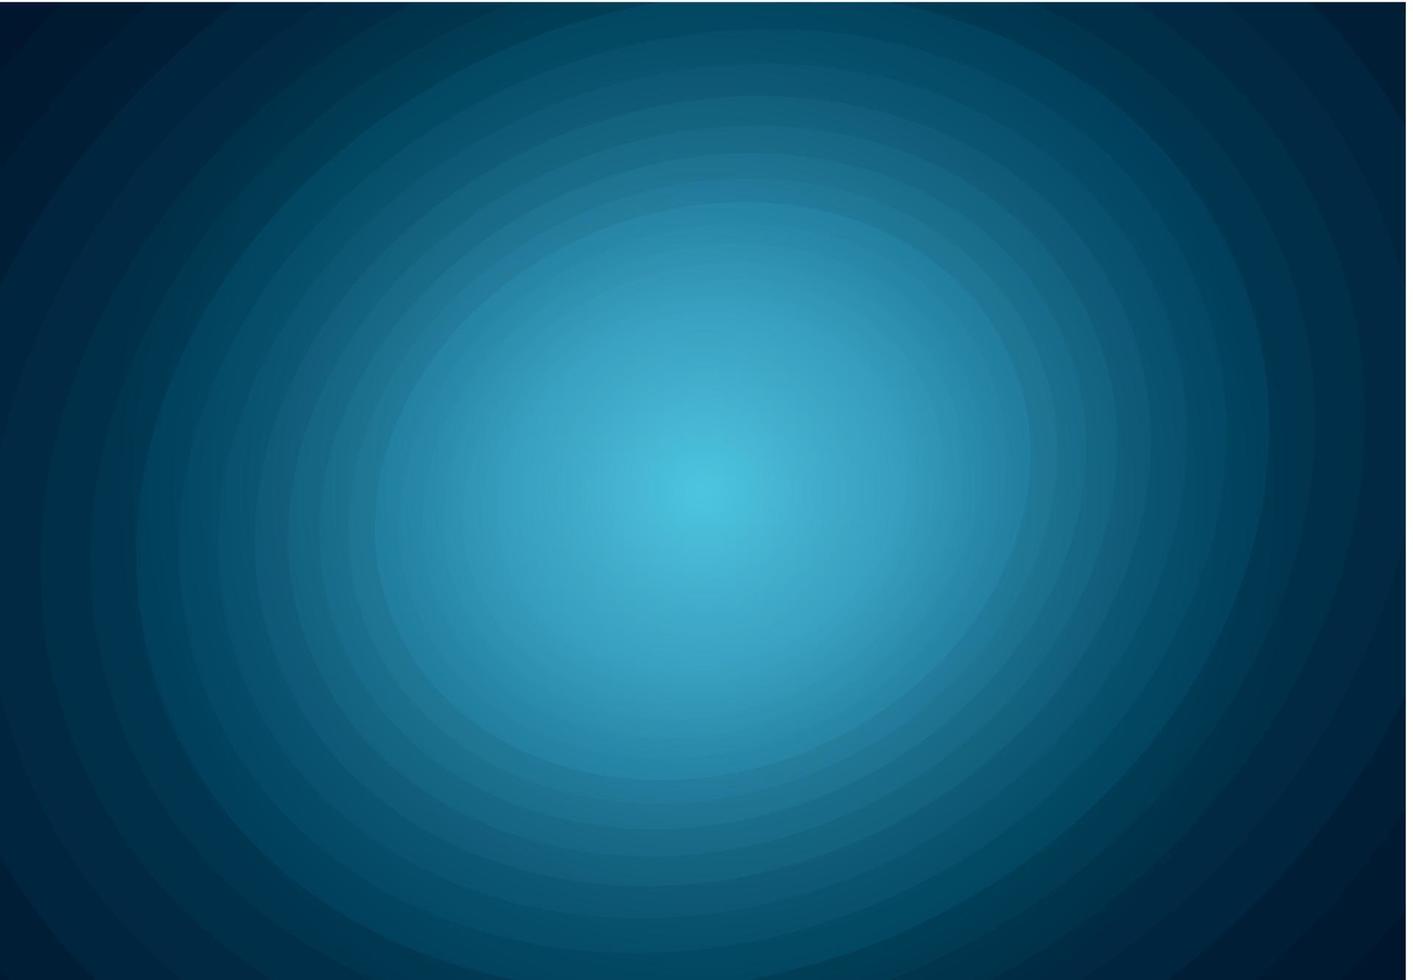 El fondo degradado azul ovalado abstracto tiene espacio en blanco vector